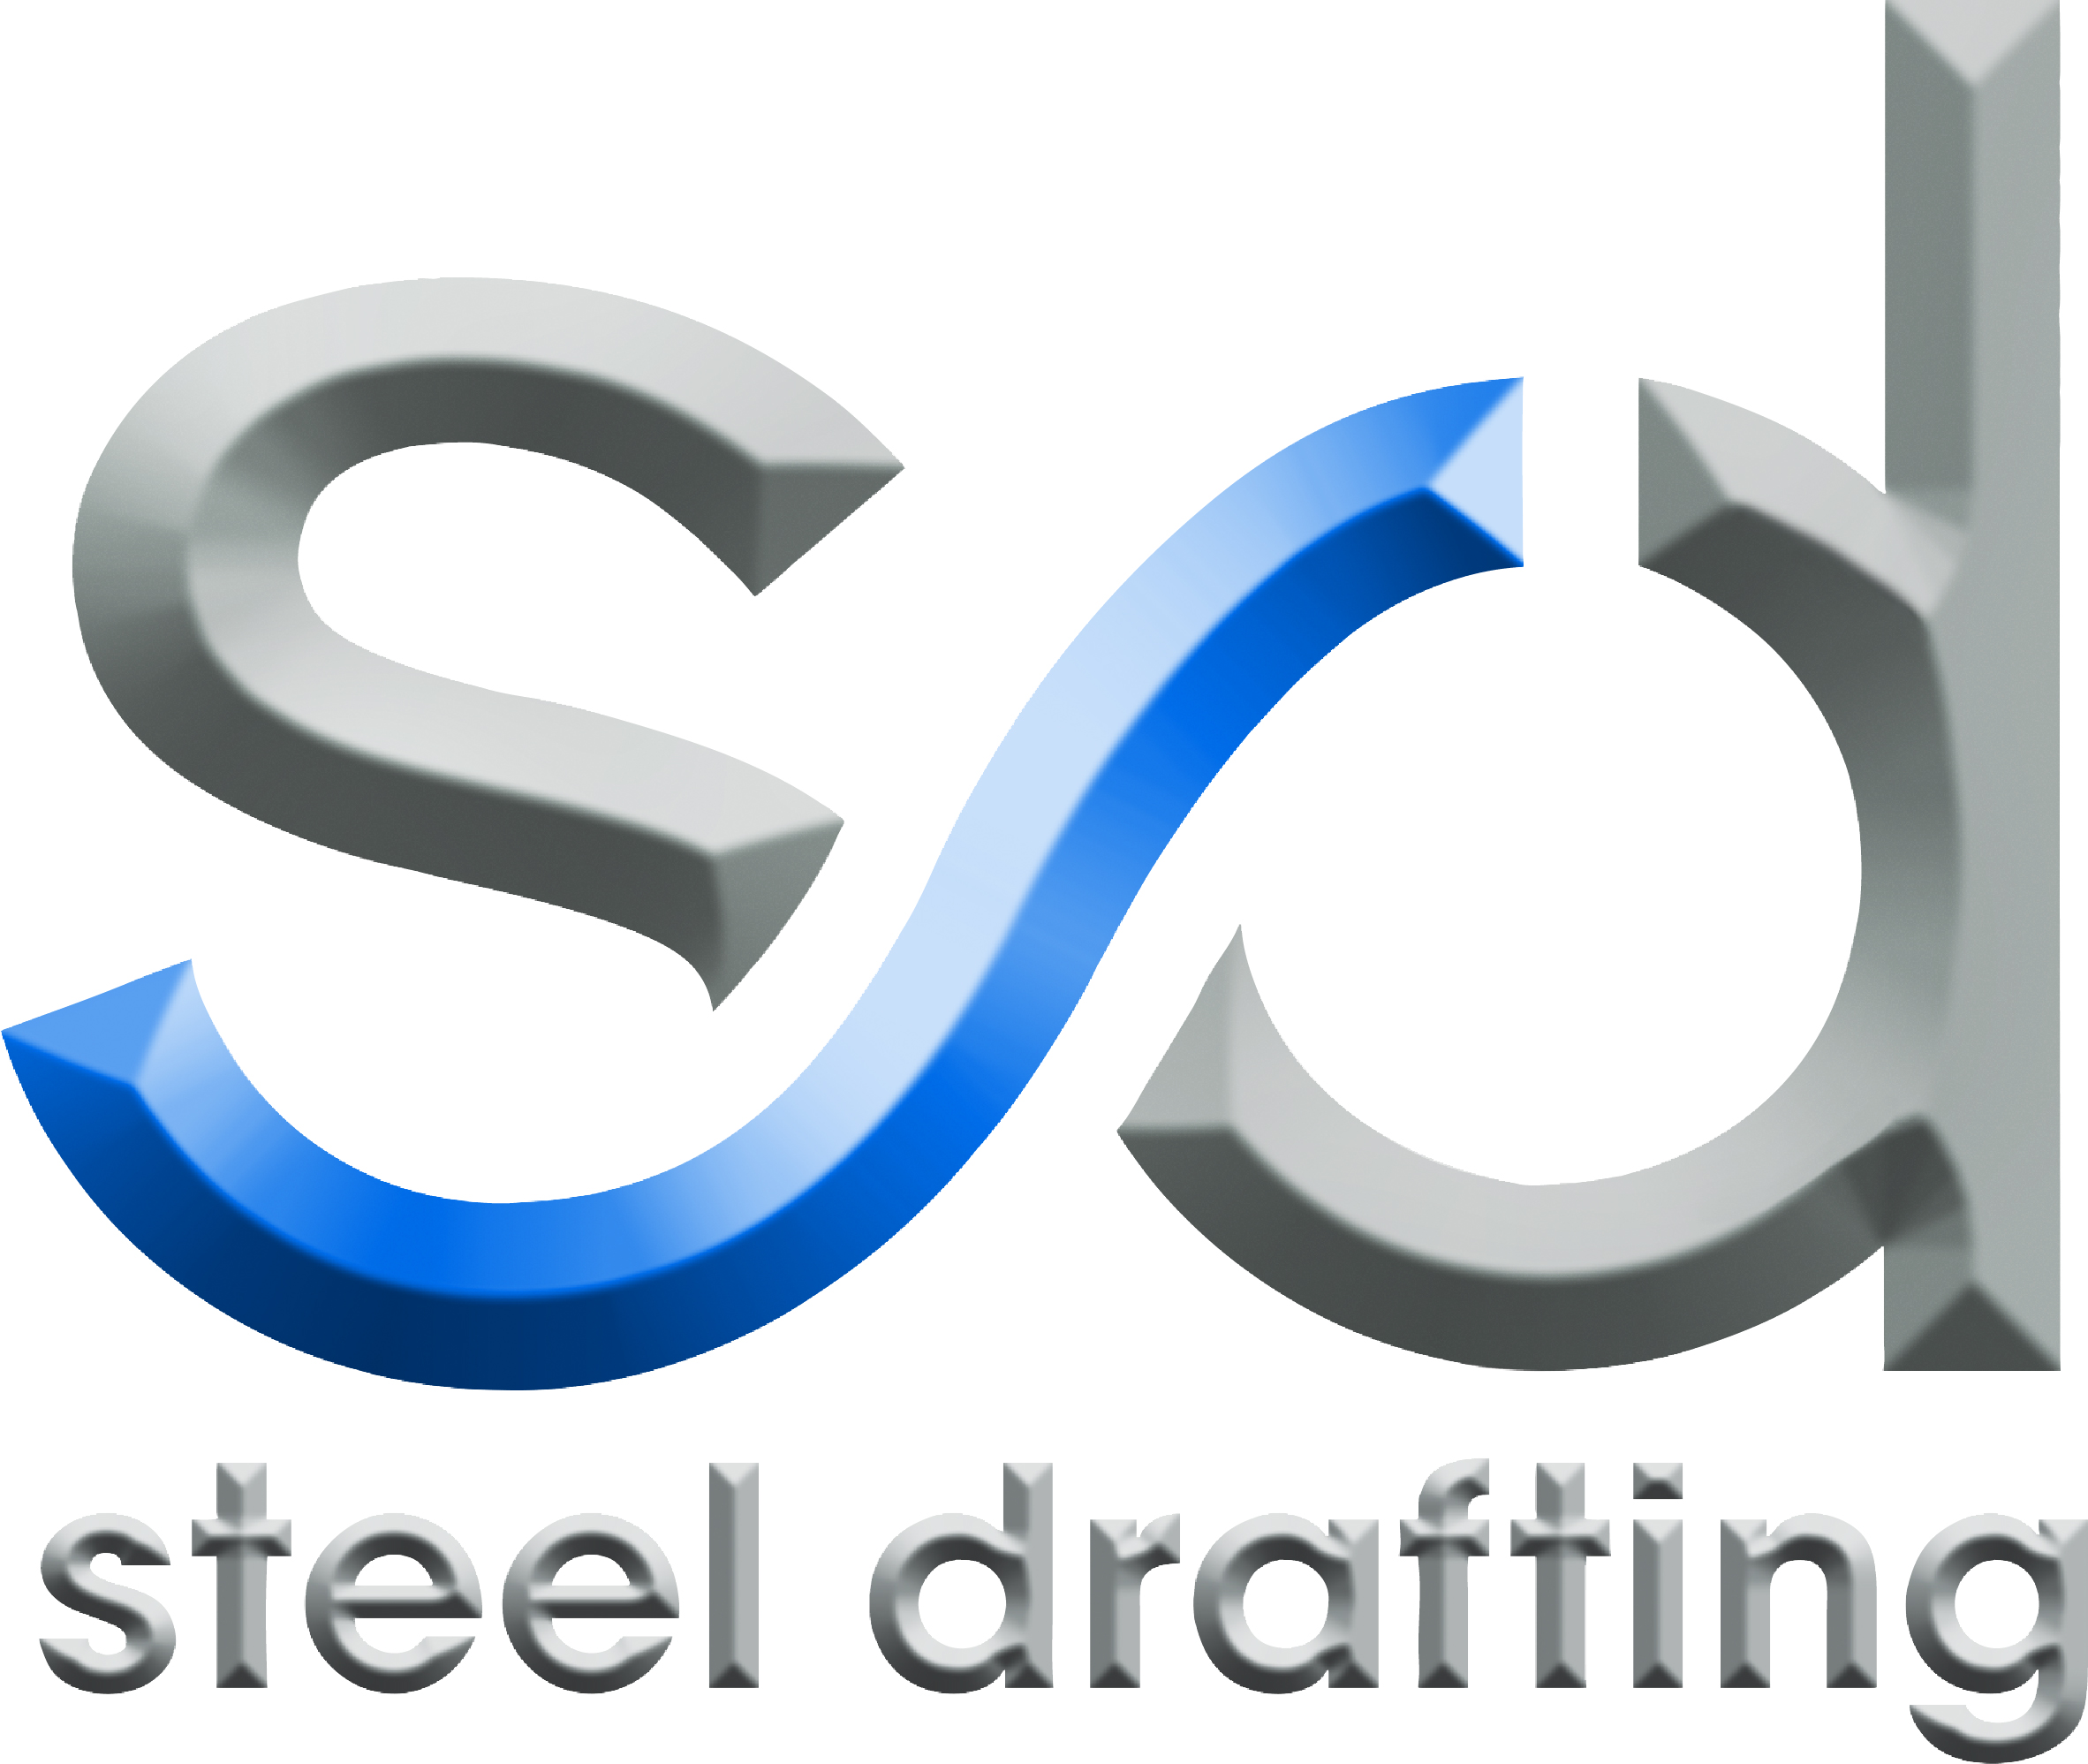 Steel Drafting